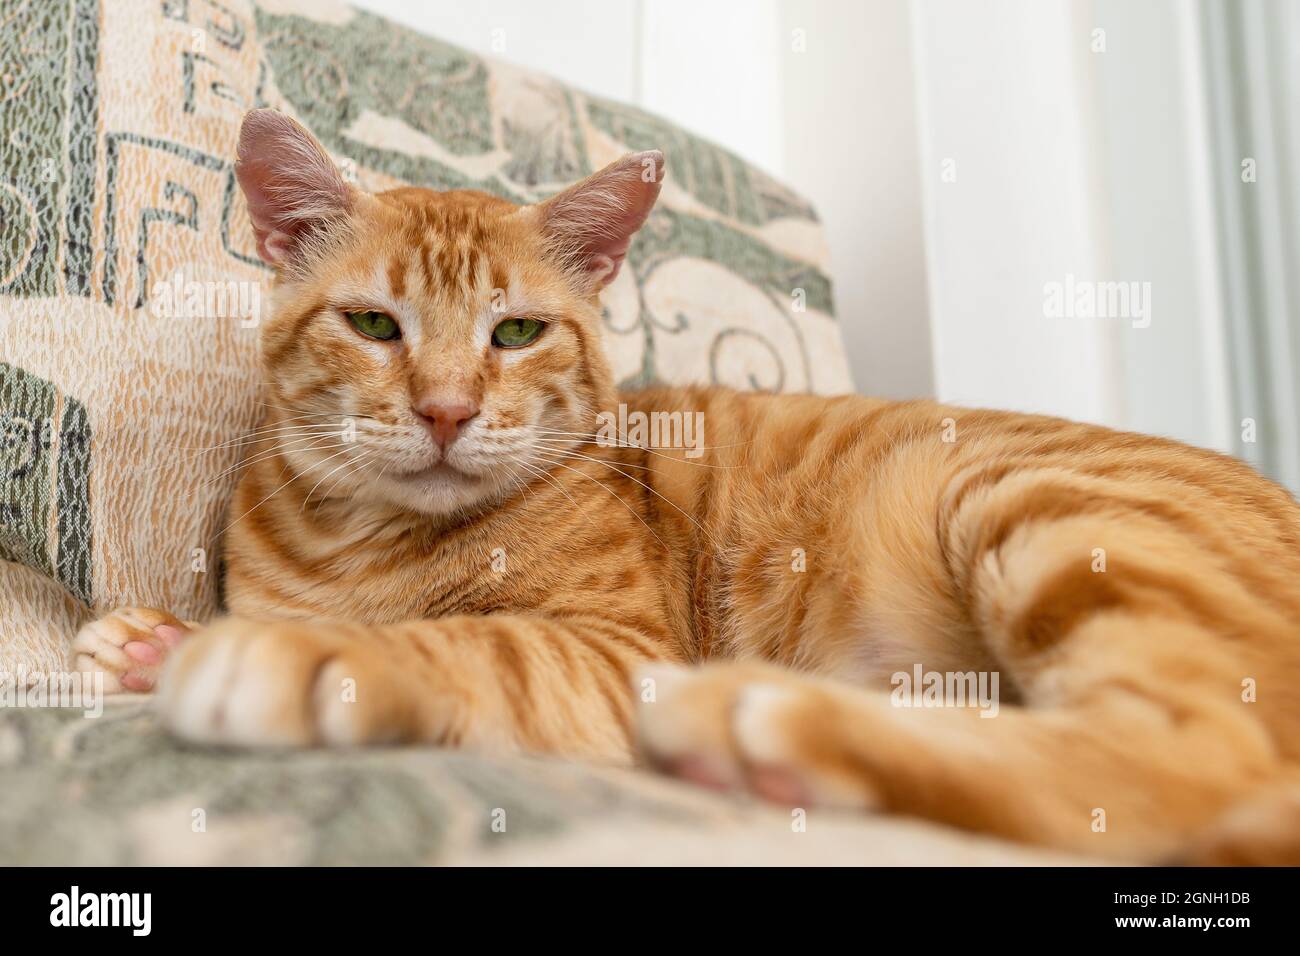 Adorabile gatto rosso ci guarda da vicino mentre riposa a casa. Ritratto di zenzero tabby gatto faccia con serio sguardo di occhi verdi. Gatto domestico adulto Foto Stock